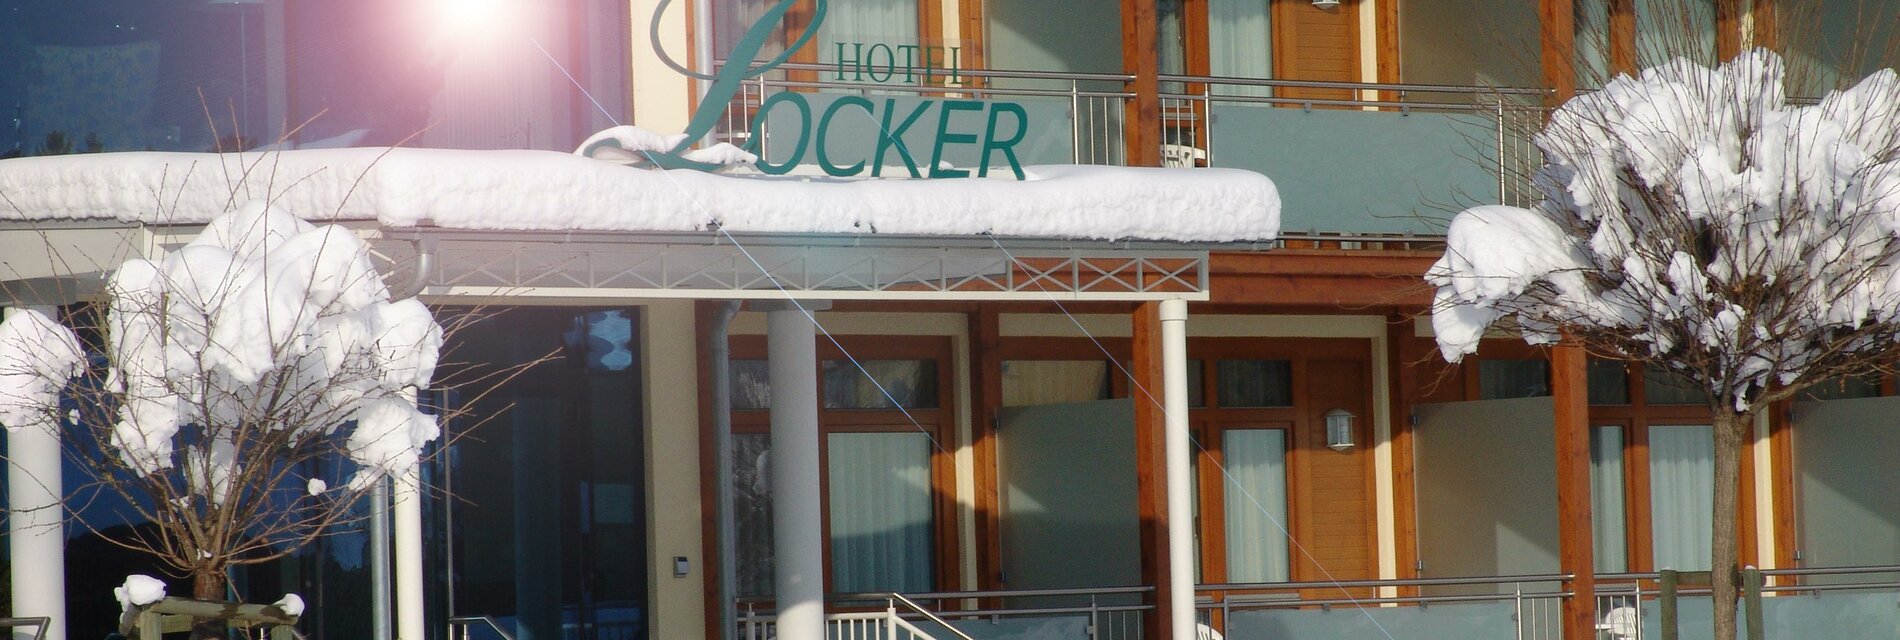 winterfoto hotel mit schein